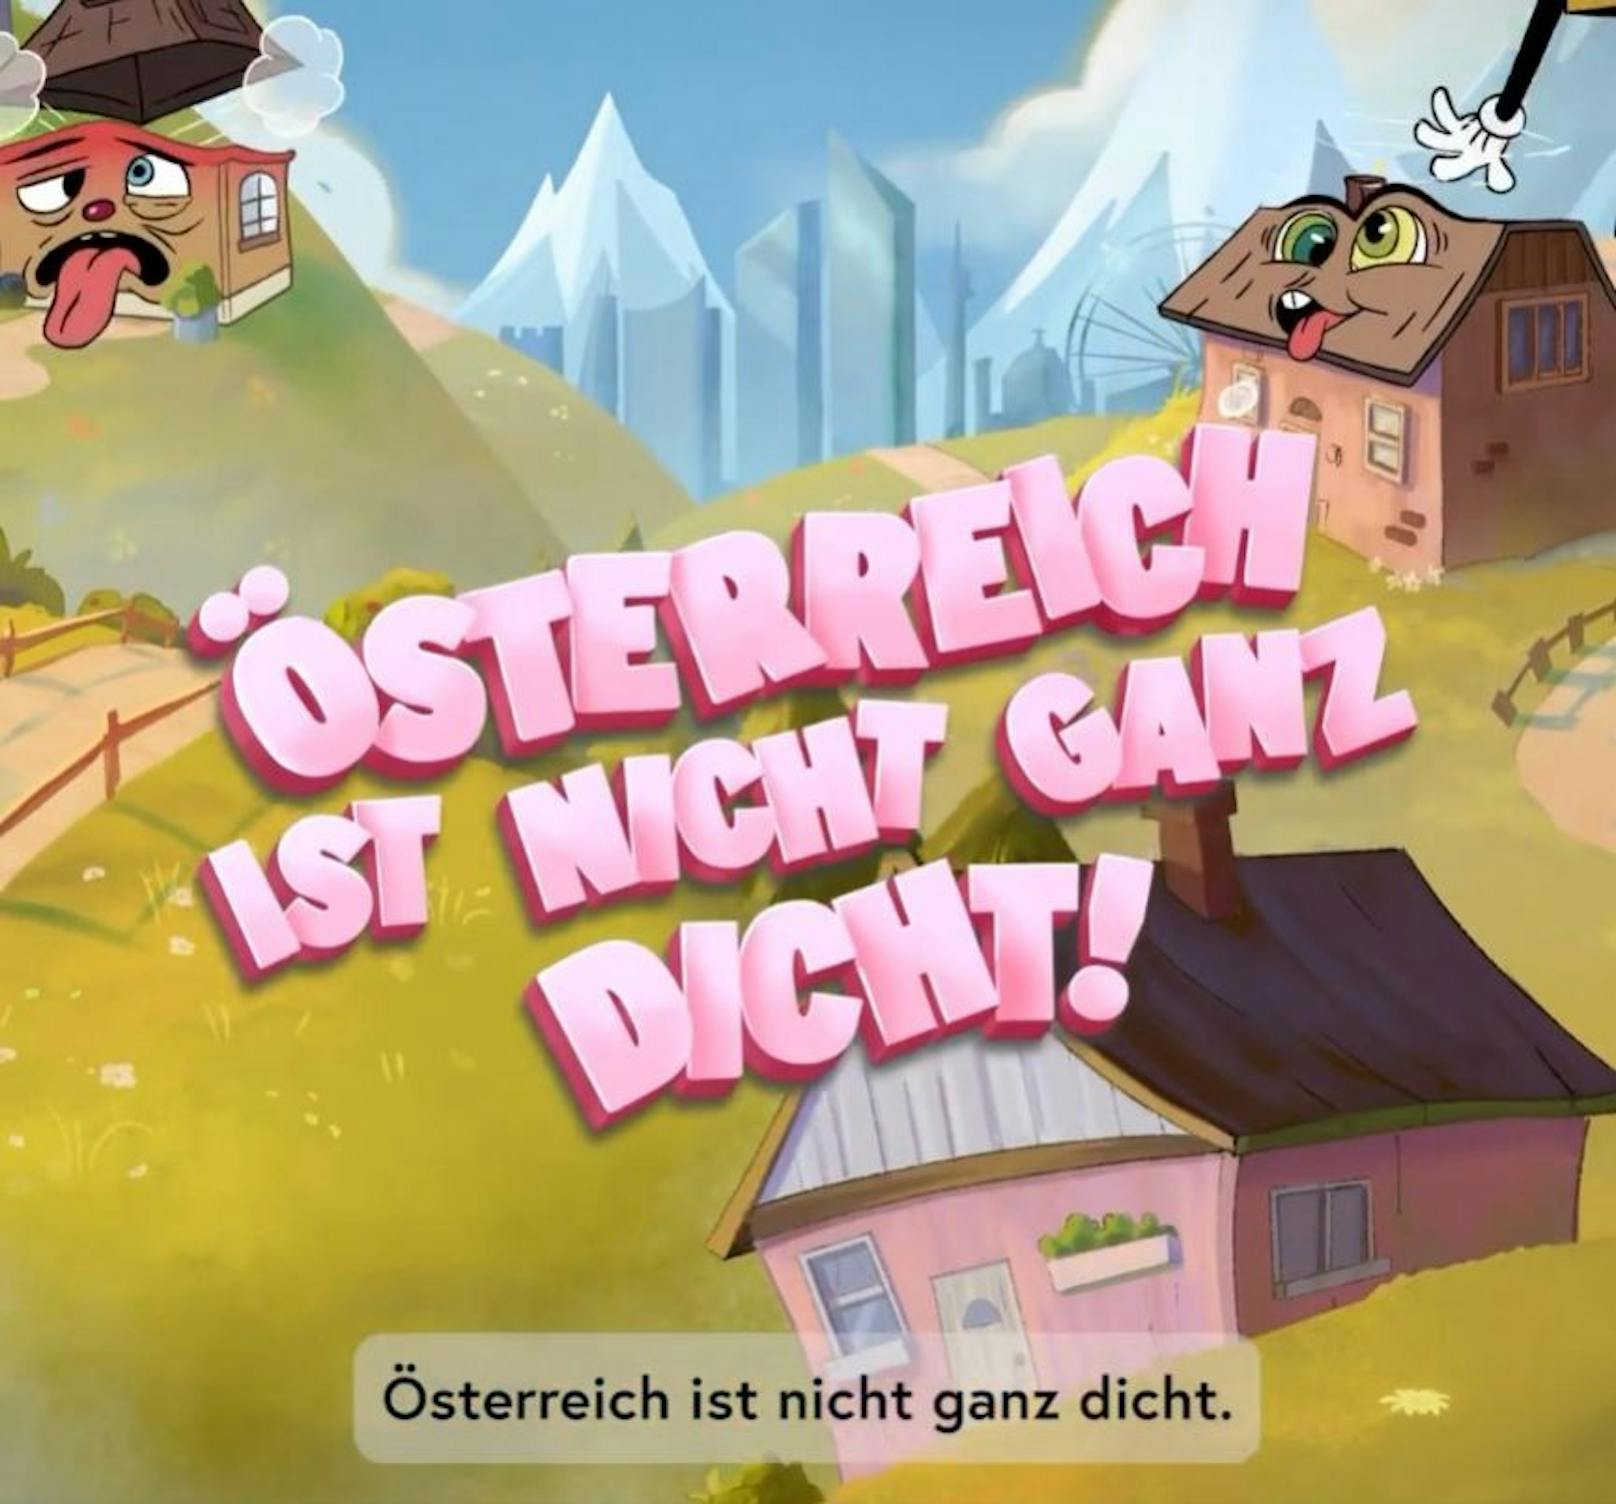 Der Werbespot für den neuen Sanierungsbonus mit dem Slogan "Österreich ist nicht ganz dicht" sorgt für Irritationen.